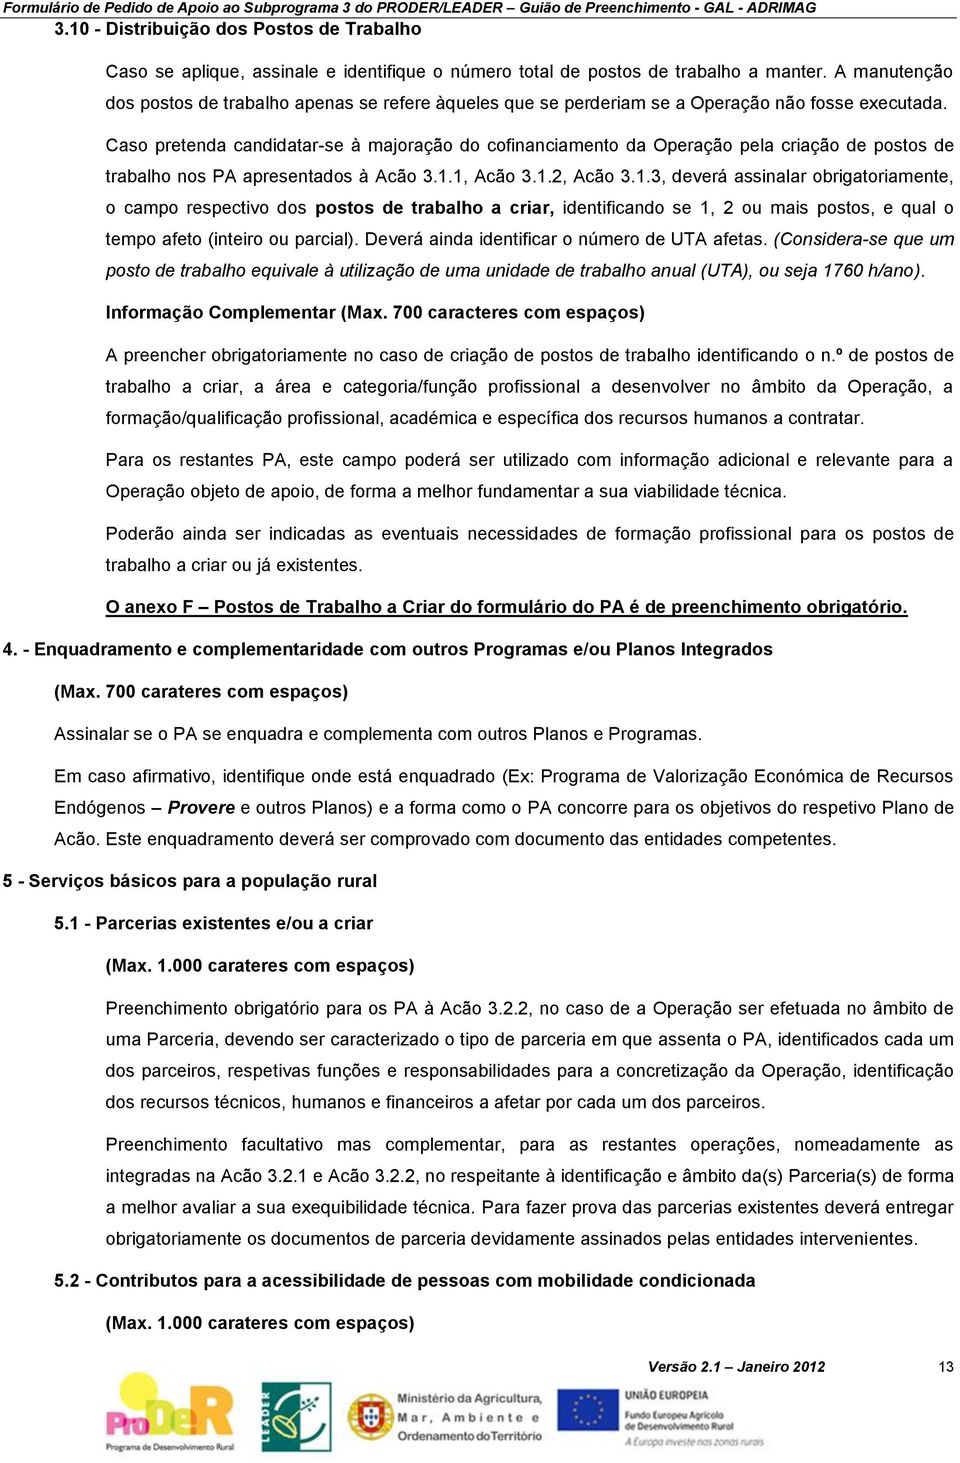 Caso pretenda candidatar-se à majoração do cofinanciamento da Operação pela criação de postos de trabalho nos PA apresentados à Acão 3.1.